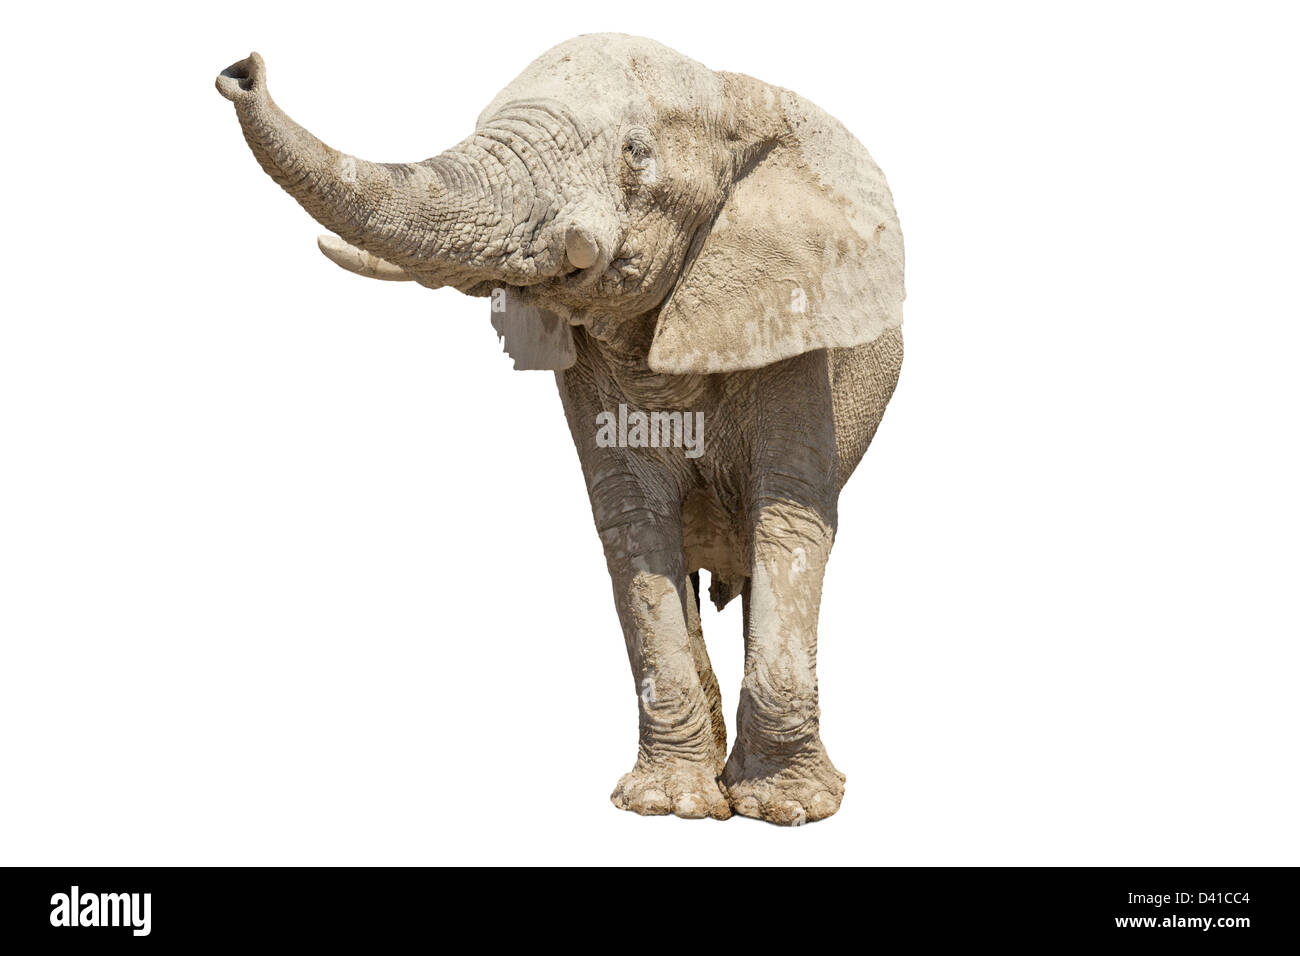 elephant on white background Stock Photo